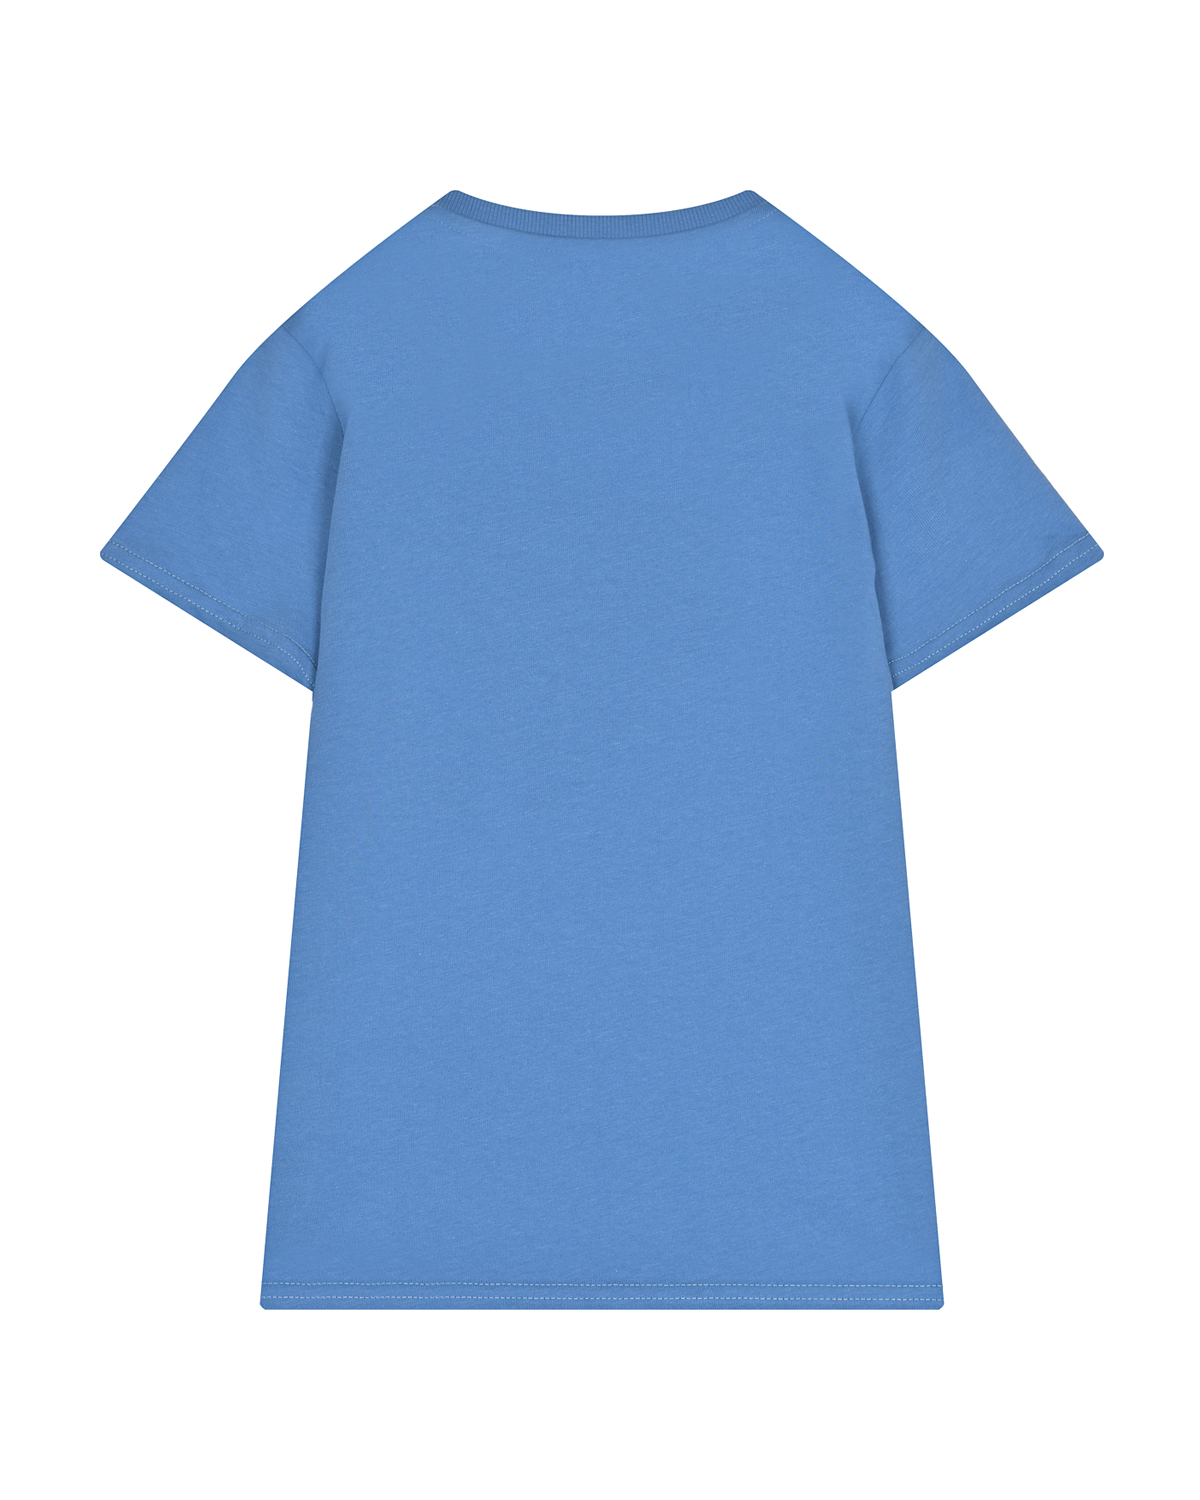 Голубая футболка с треугольным лого Guess детская, размер 128, цвет голубой - фото 2